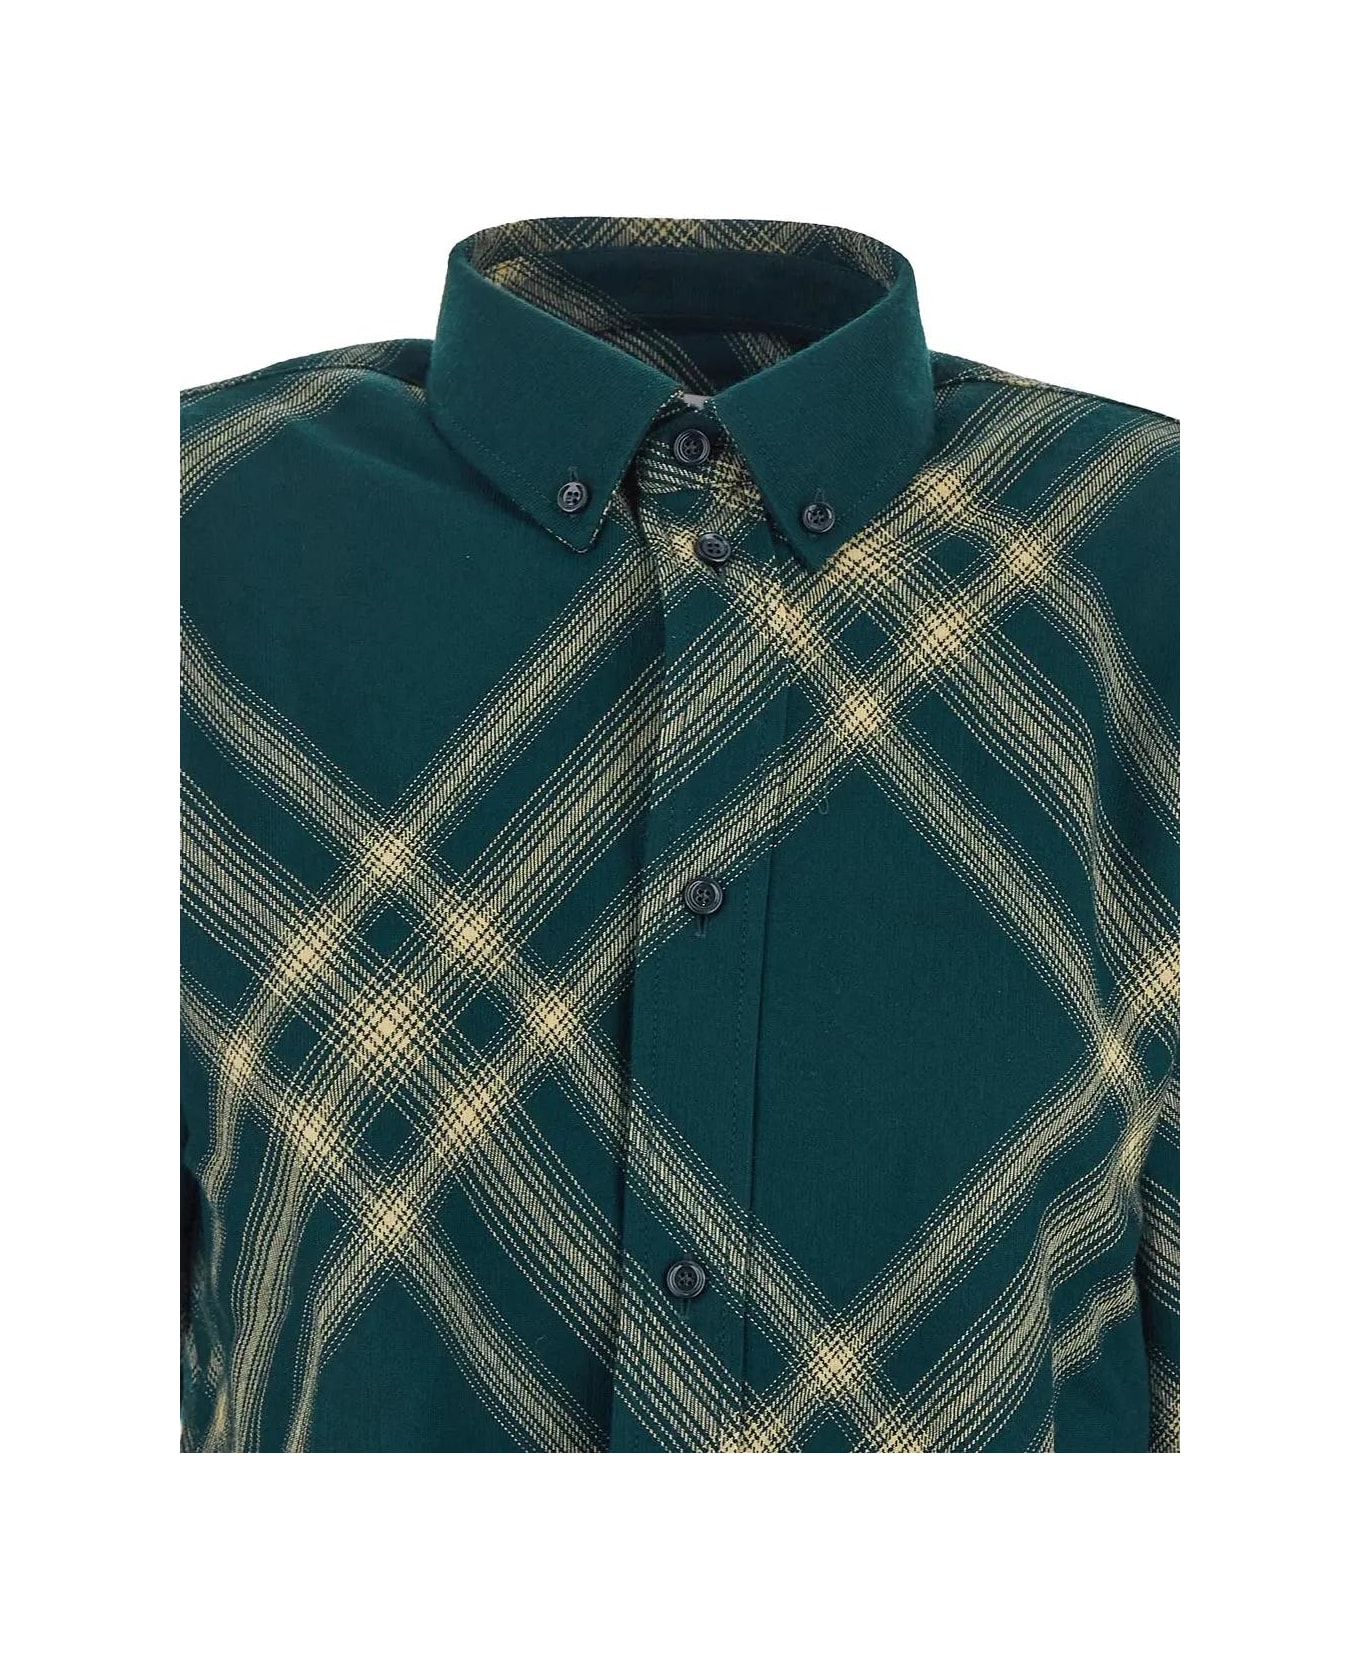 Burberry Tartan Shirt - GREEN シャツ